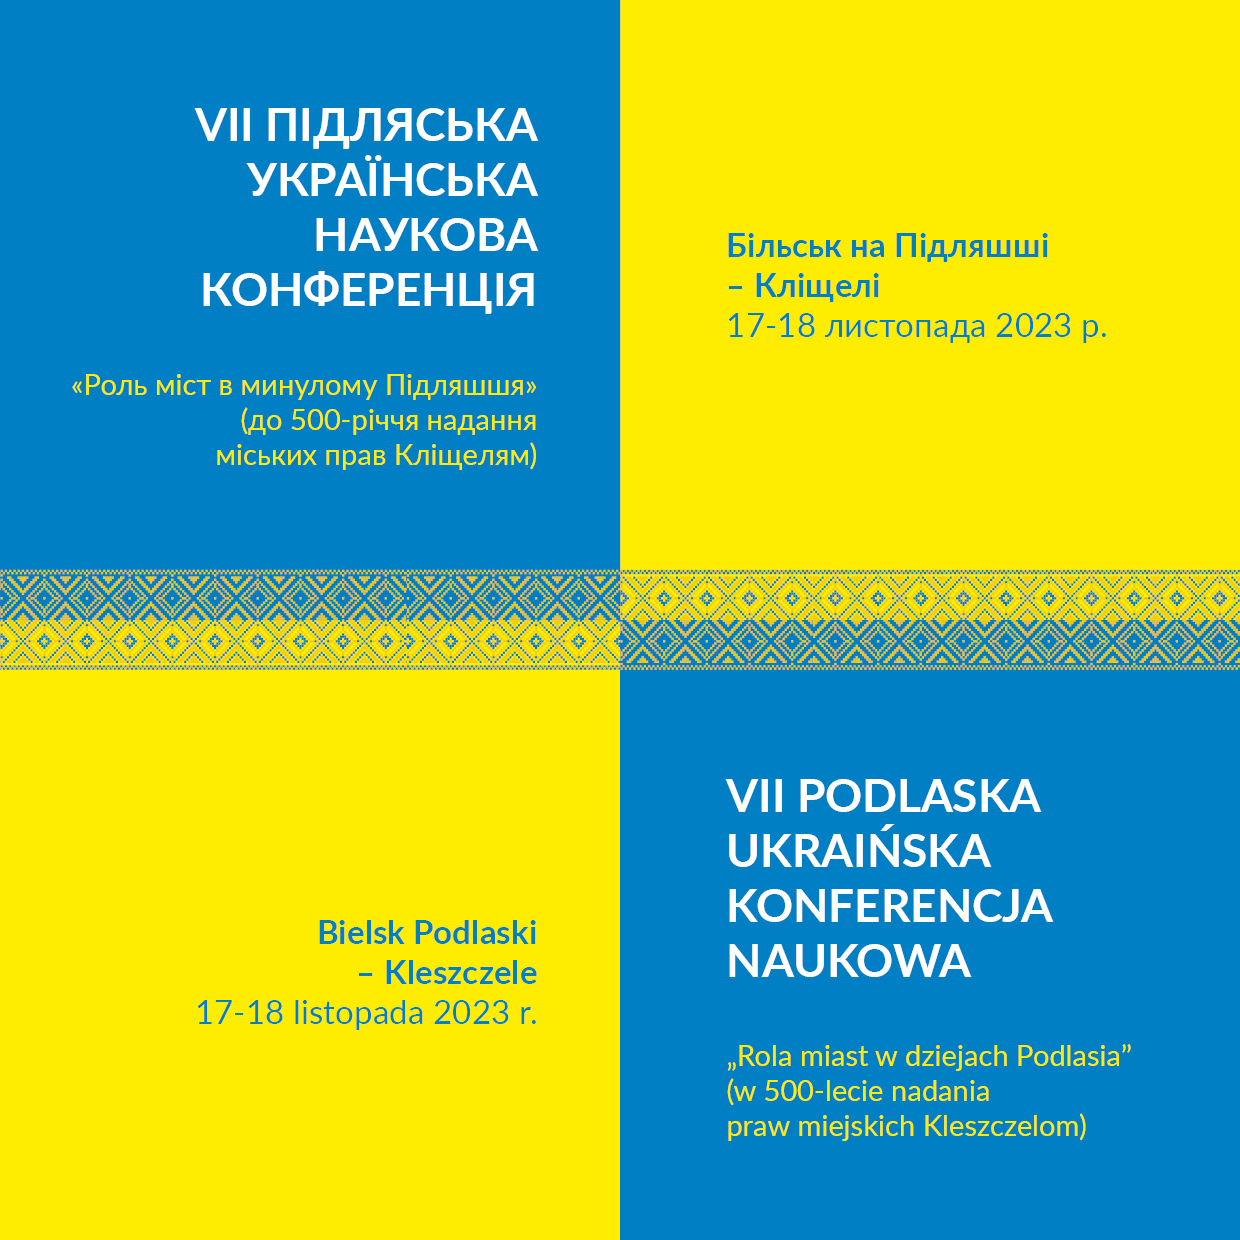 Już za 2 tygodnie VII Podlaska Ukraińska Konferencja Naukowa „Rola miast w dziejach Podlasia” (w 500-lecie nadania praw miejskich Kleszczelom).